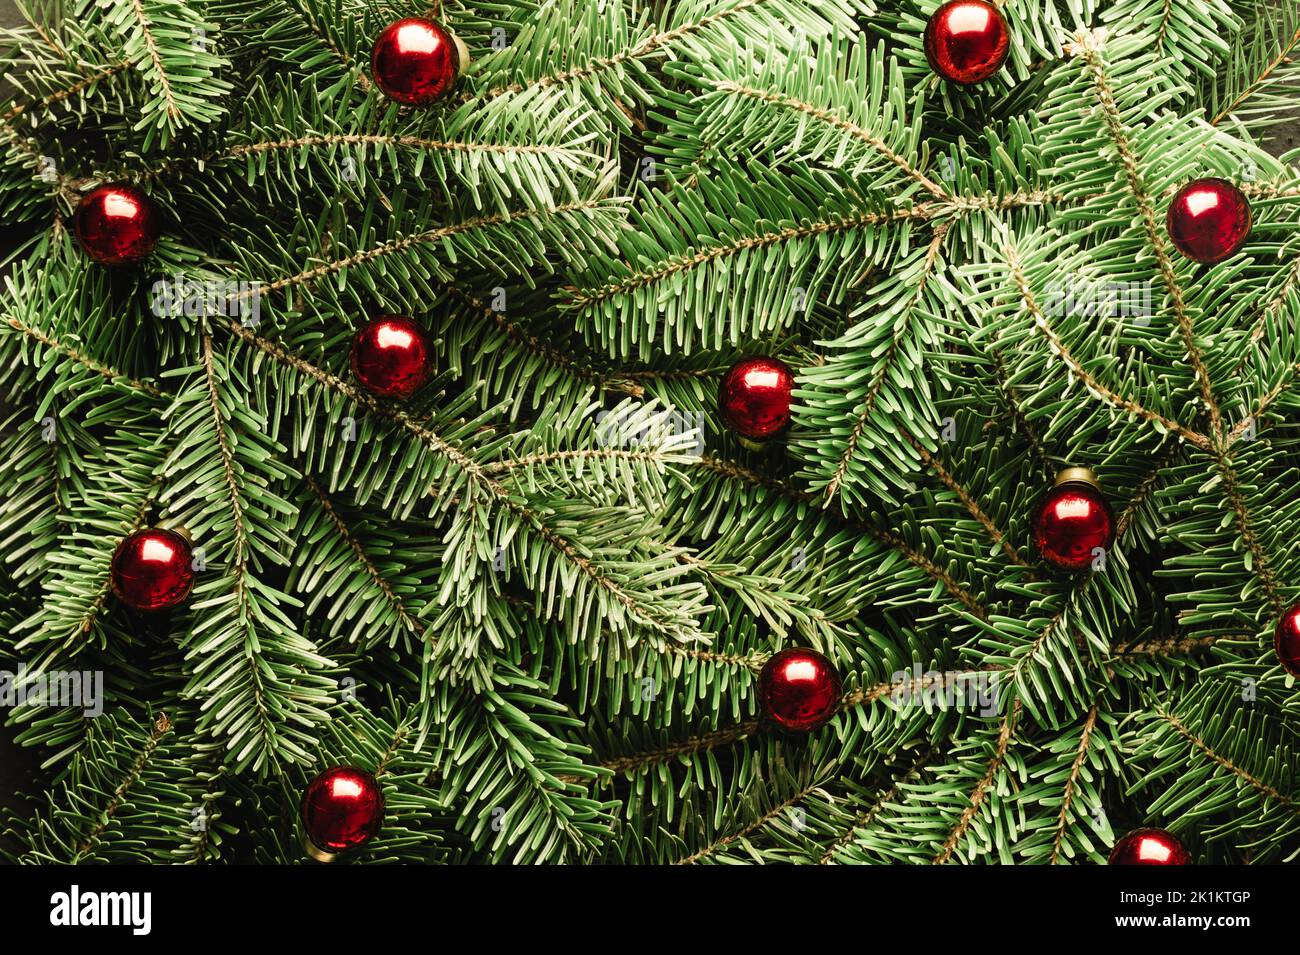 Fondo creativo de las vacaciones de Navidad con ramitas de abeto y bolas rojas de navidad de primer plano. Diseño plano, vista superior. Feliz Navidad Foto de stock